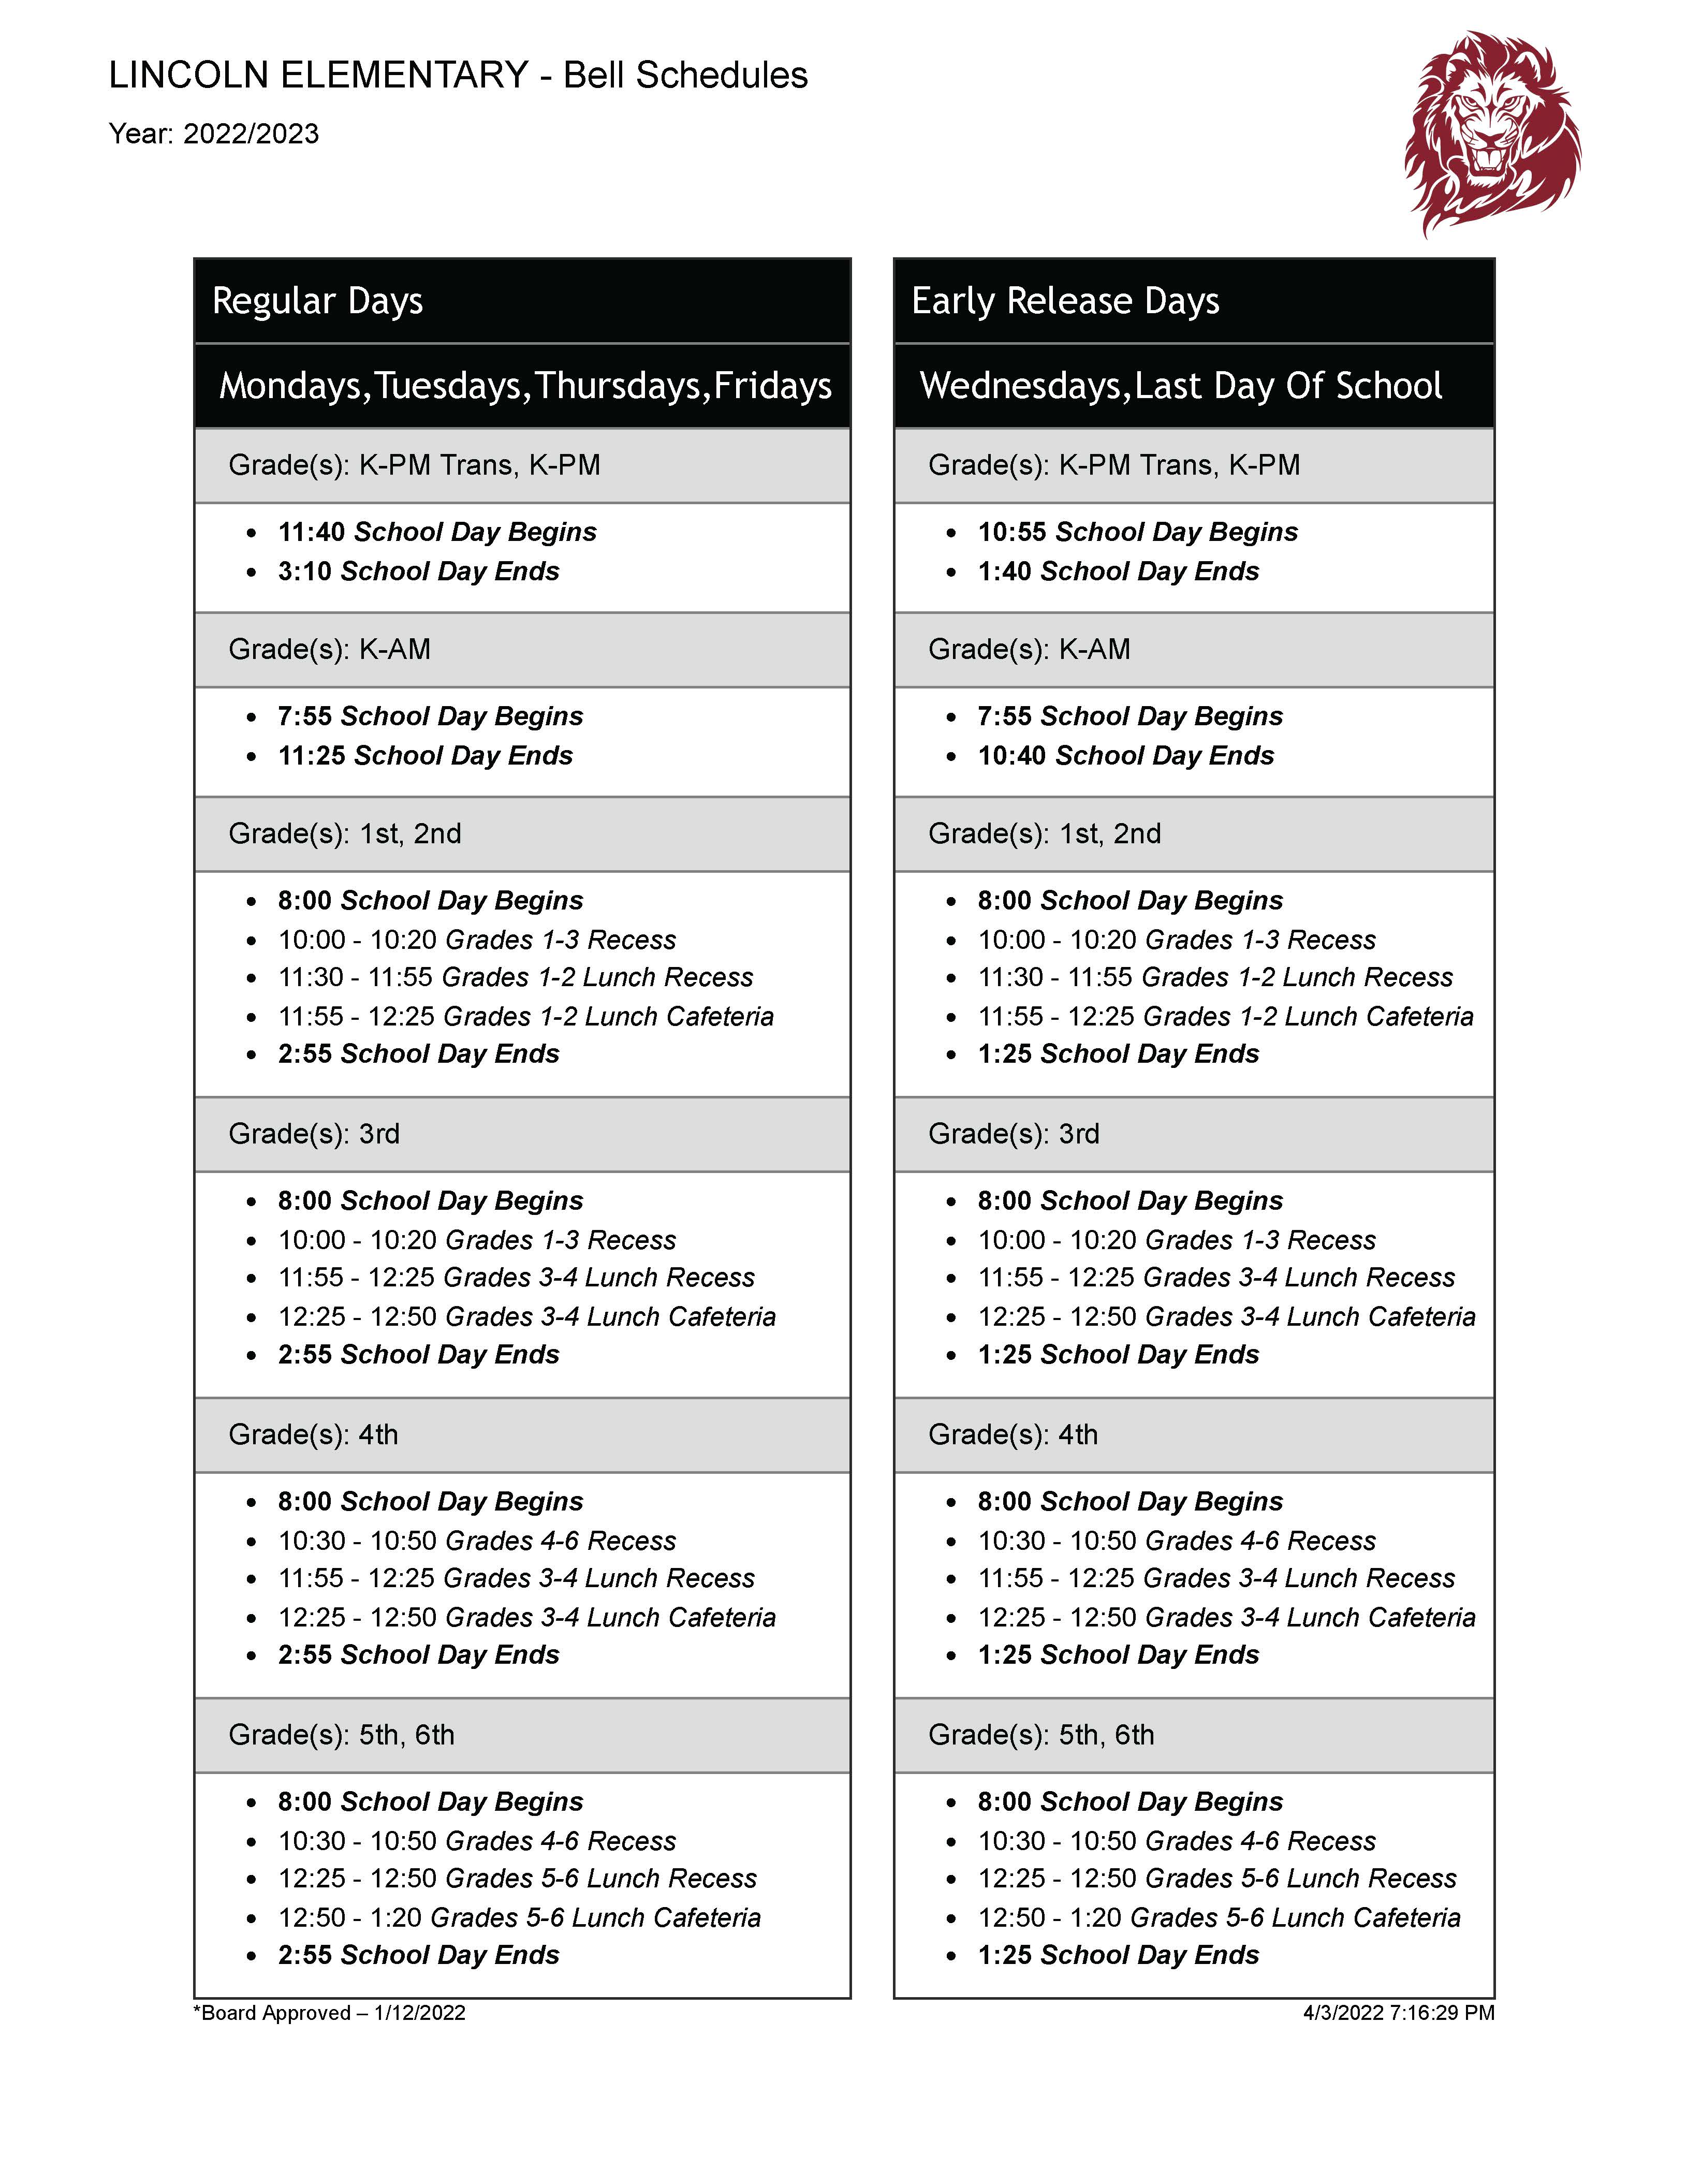 Our regular bell schedule